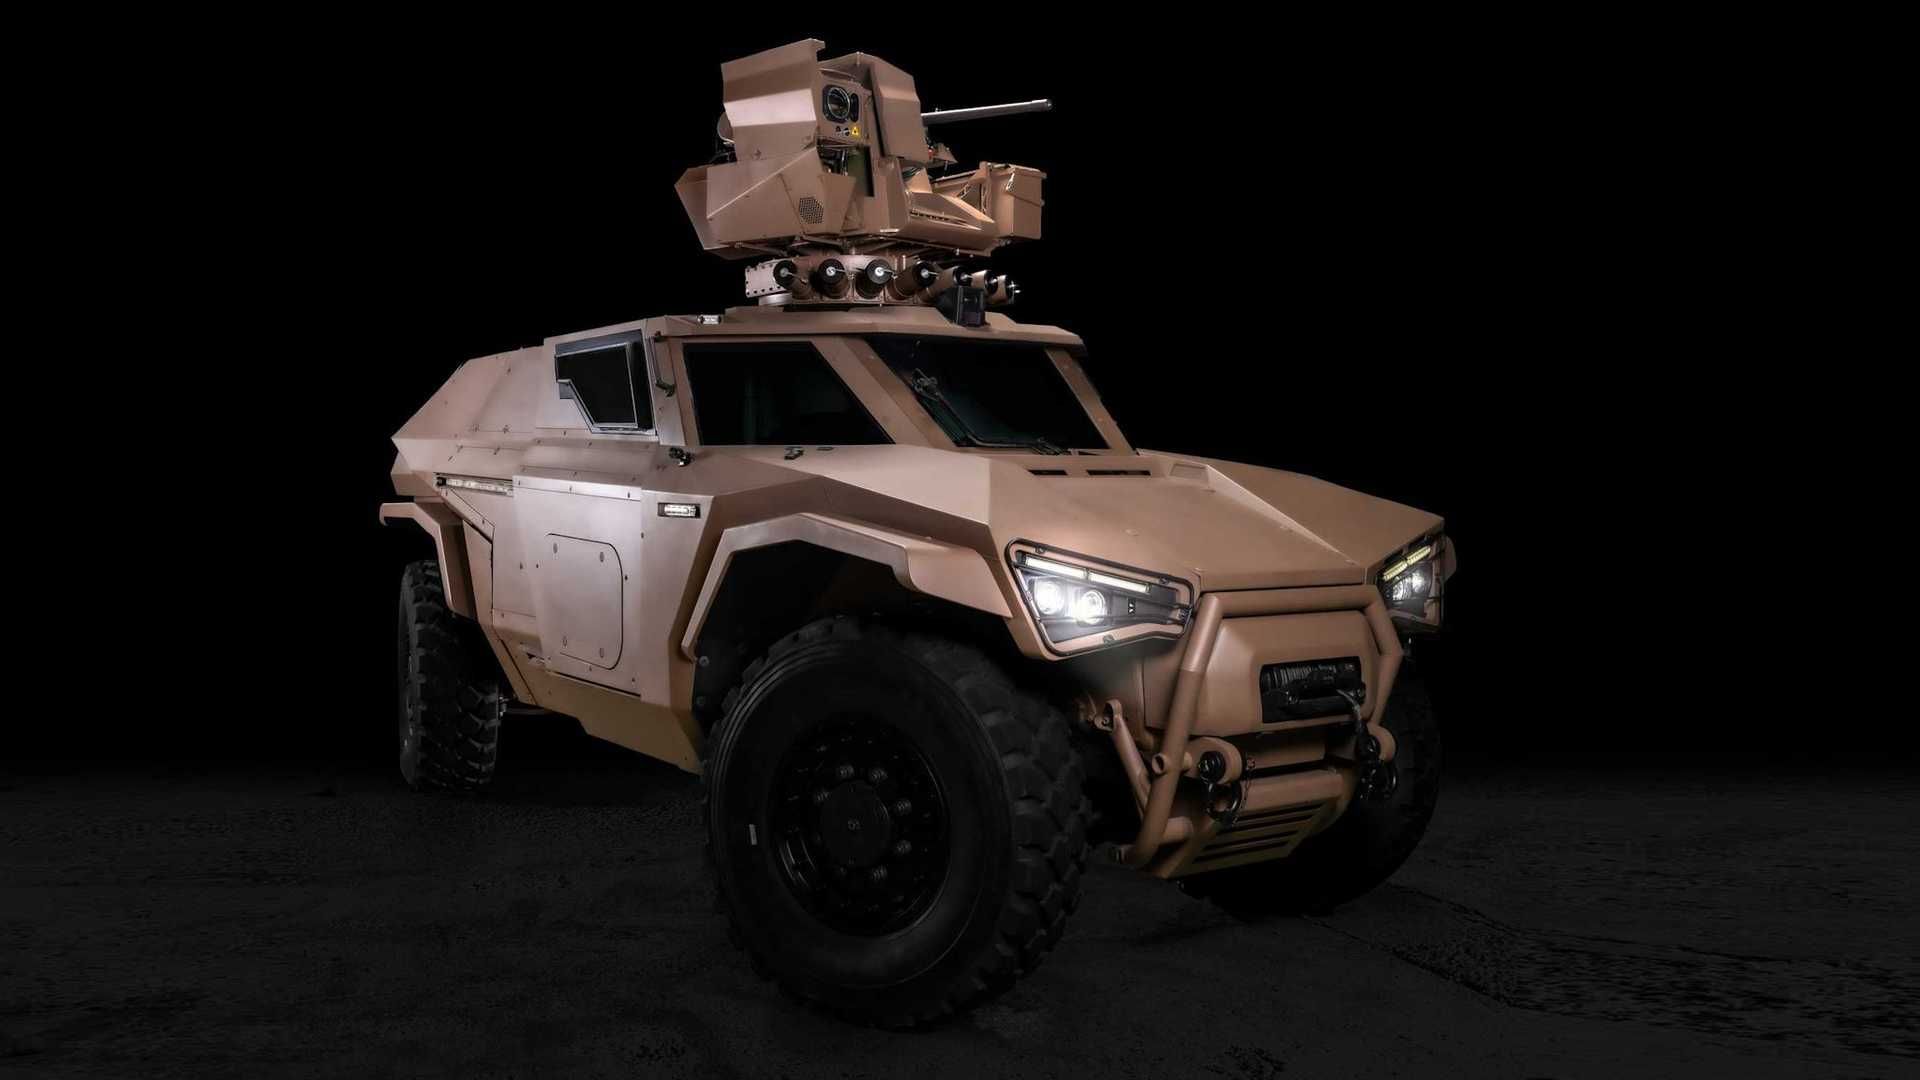 نسخه شناسایی شاسی بلند نظامی آرکیوس اسکارابی / Arquus Scarabee Hybrid Military SUV